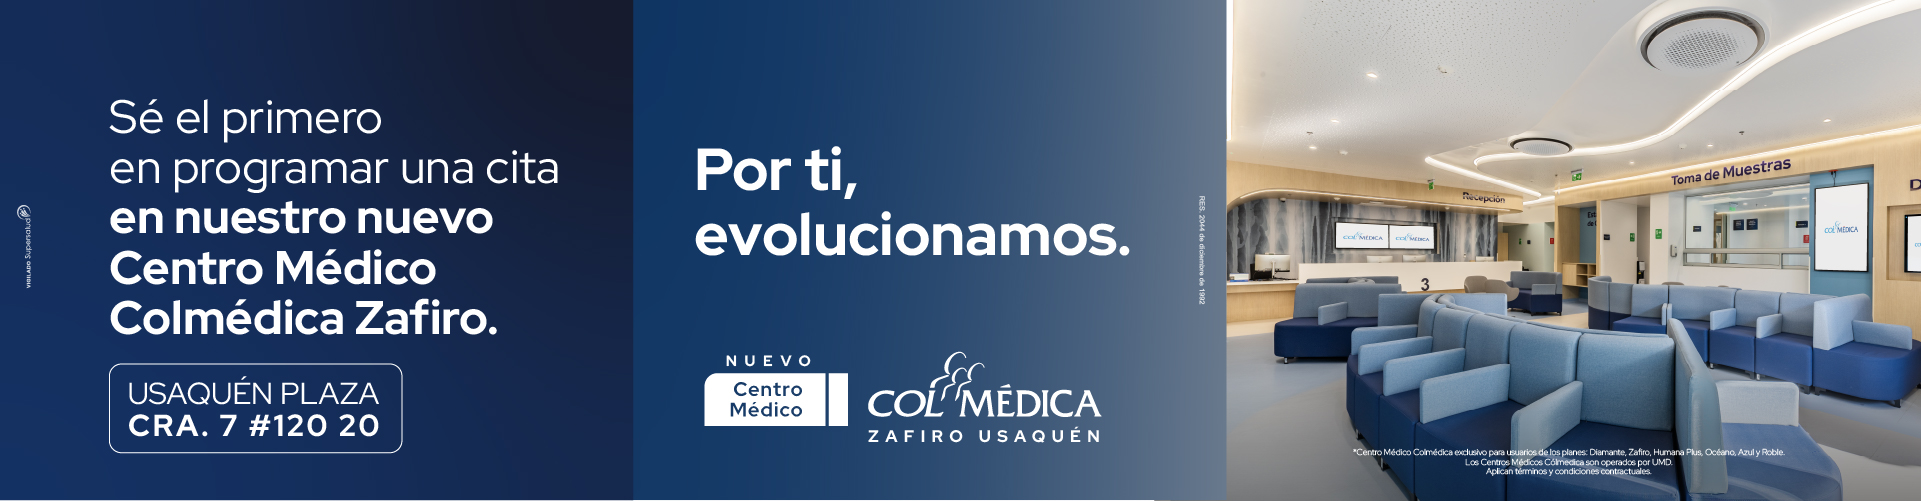 Centro Médico Colmédica Zafiro Usaquén